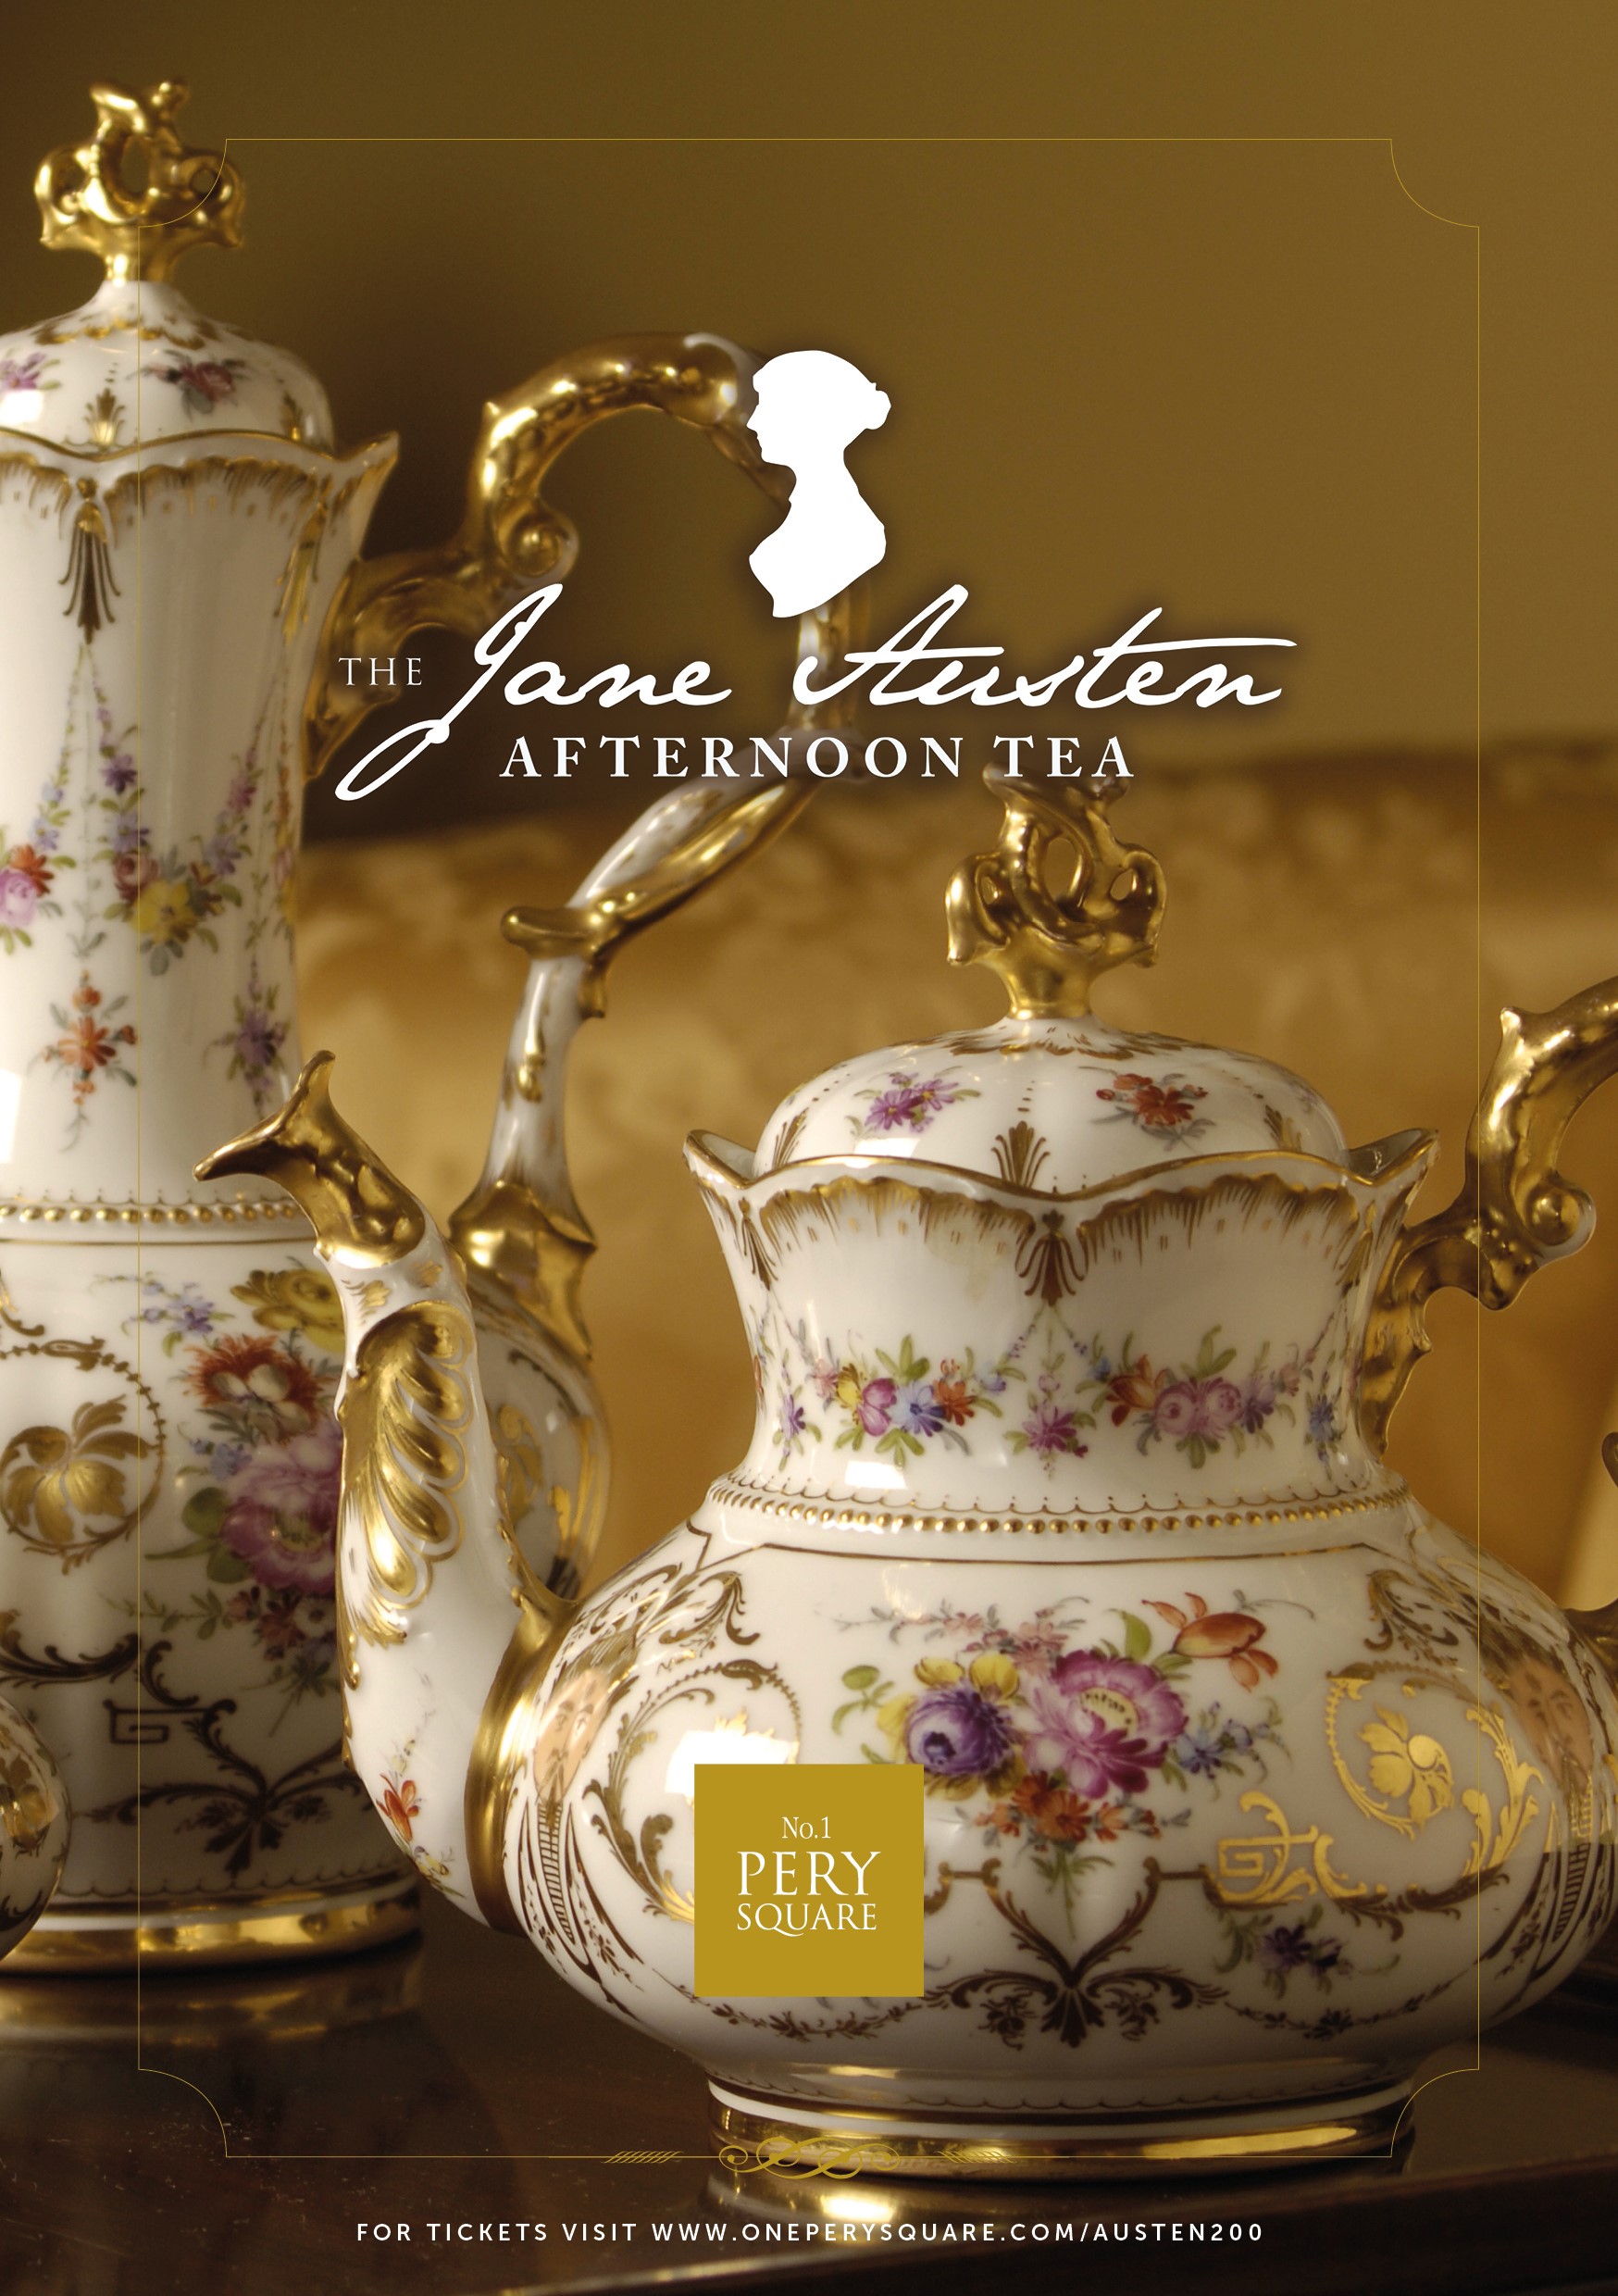 Jane Austen 200